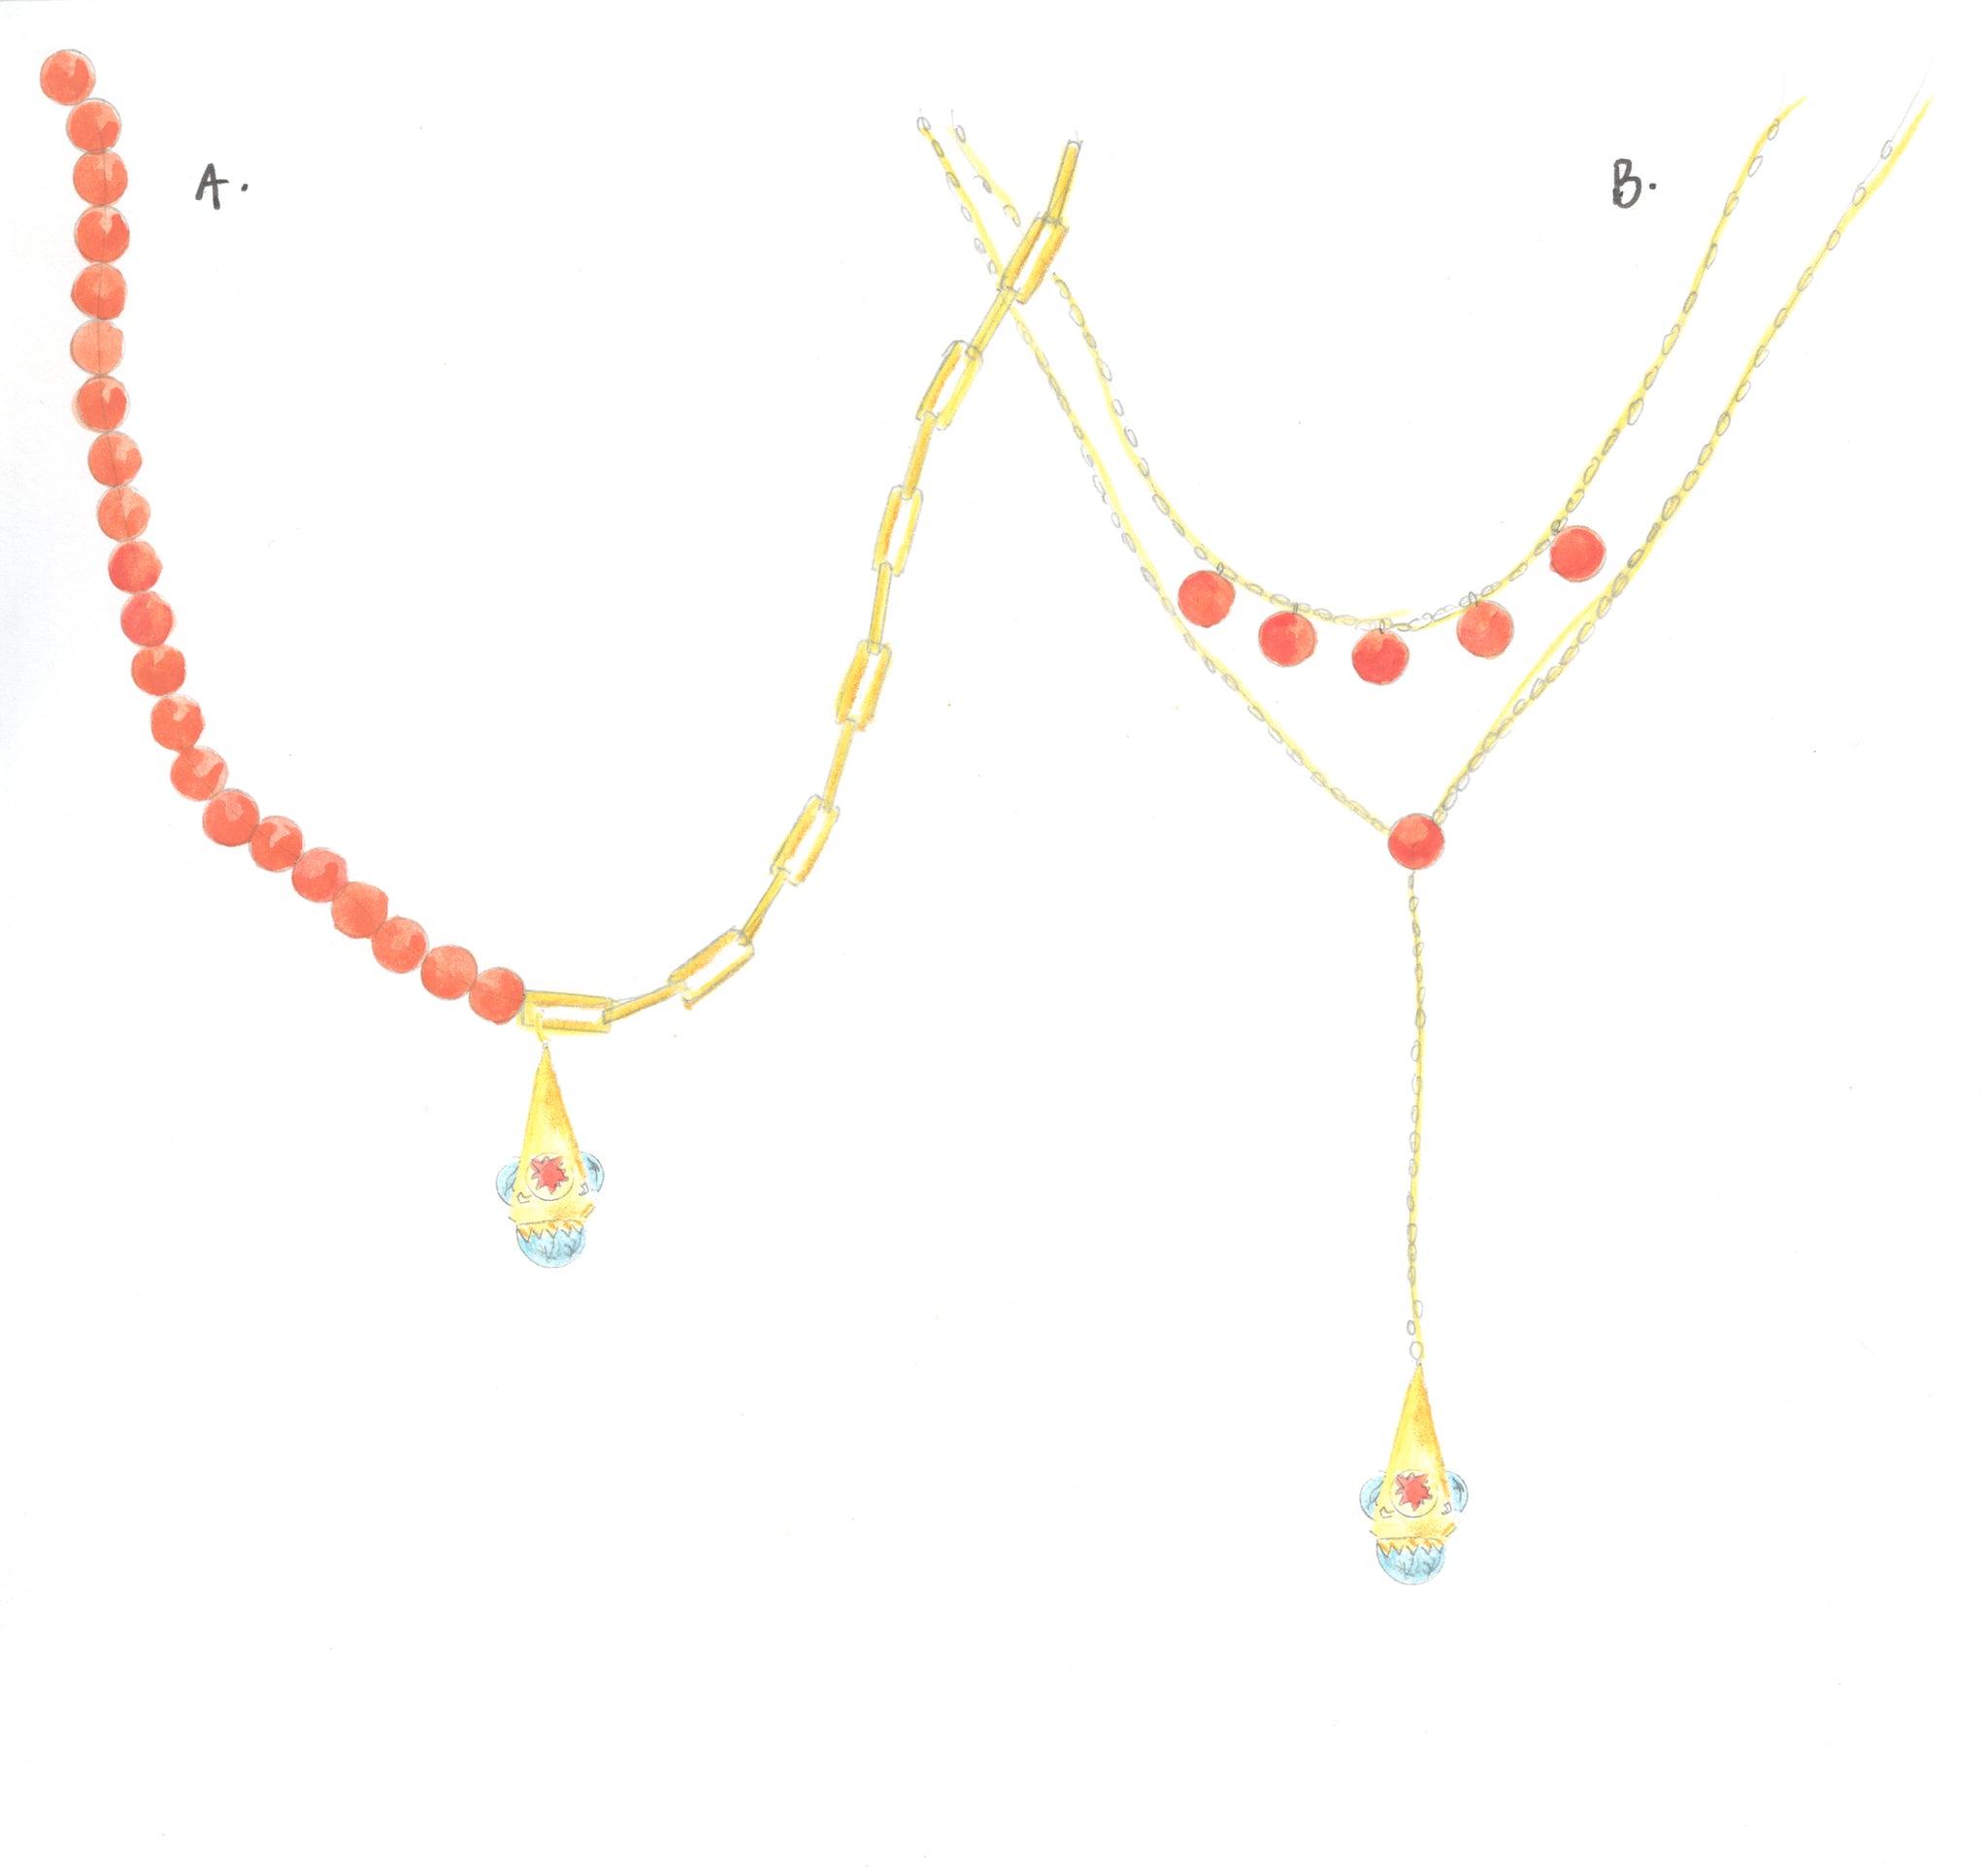 Our sketch of Deborah's beads